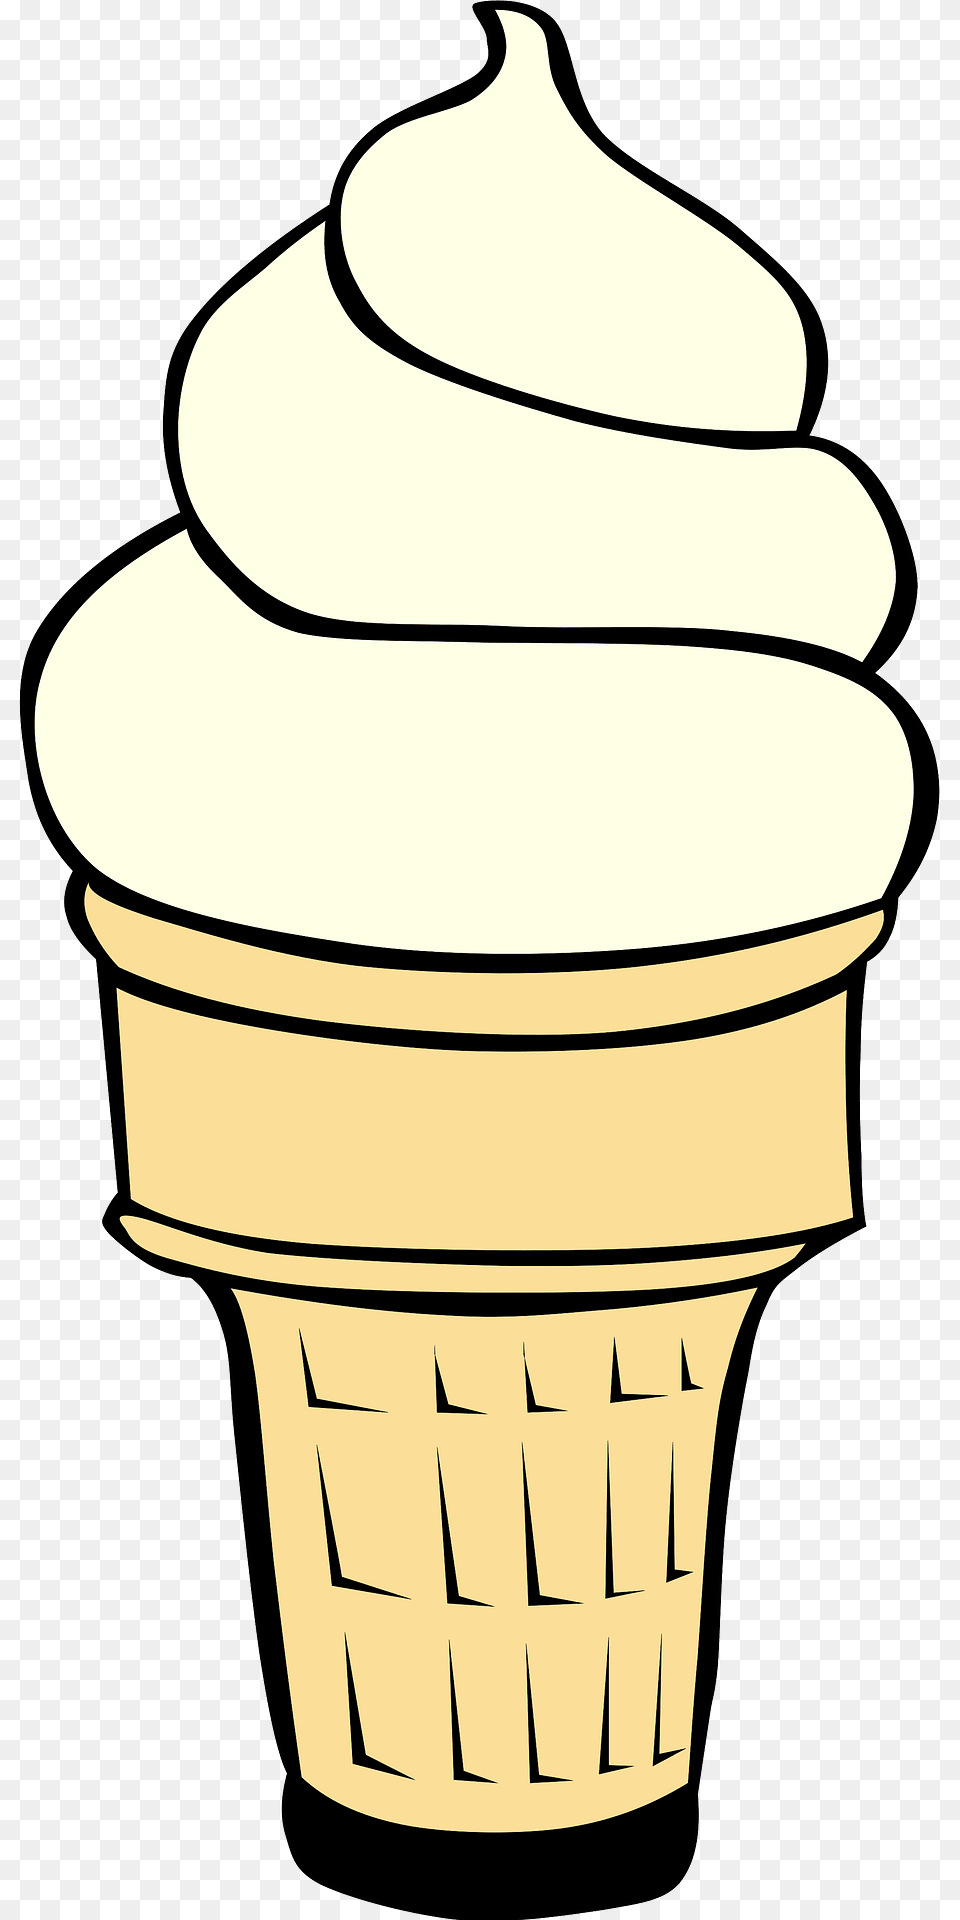 Ice Cream Cone Clipart, Dessert, Food, Ice Cream, Soft Serve Ice Cream Png